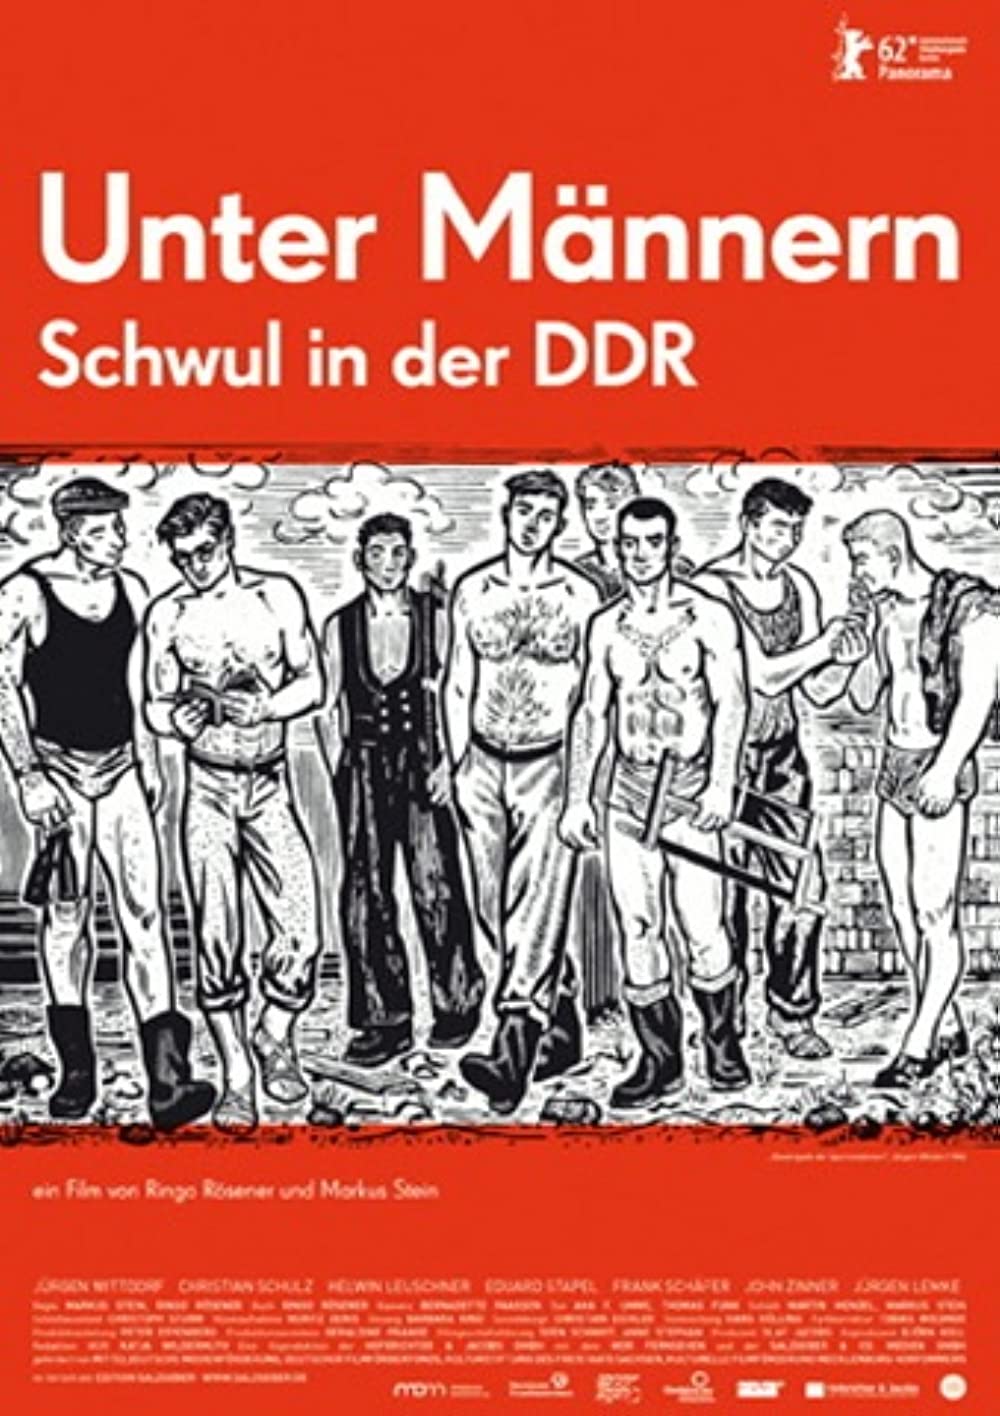 Filmbeschreibung zu Unter Männern - Schwul in der DDR